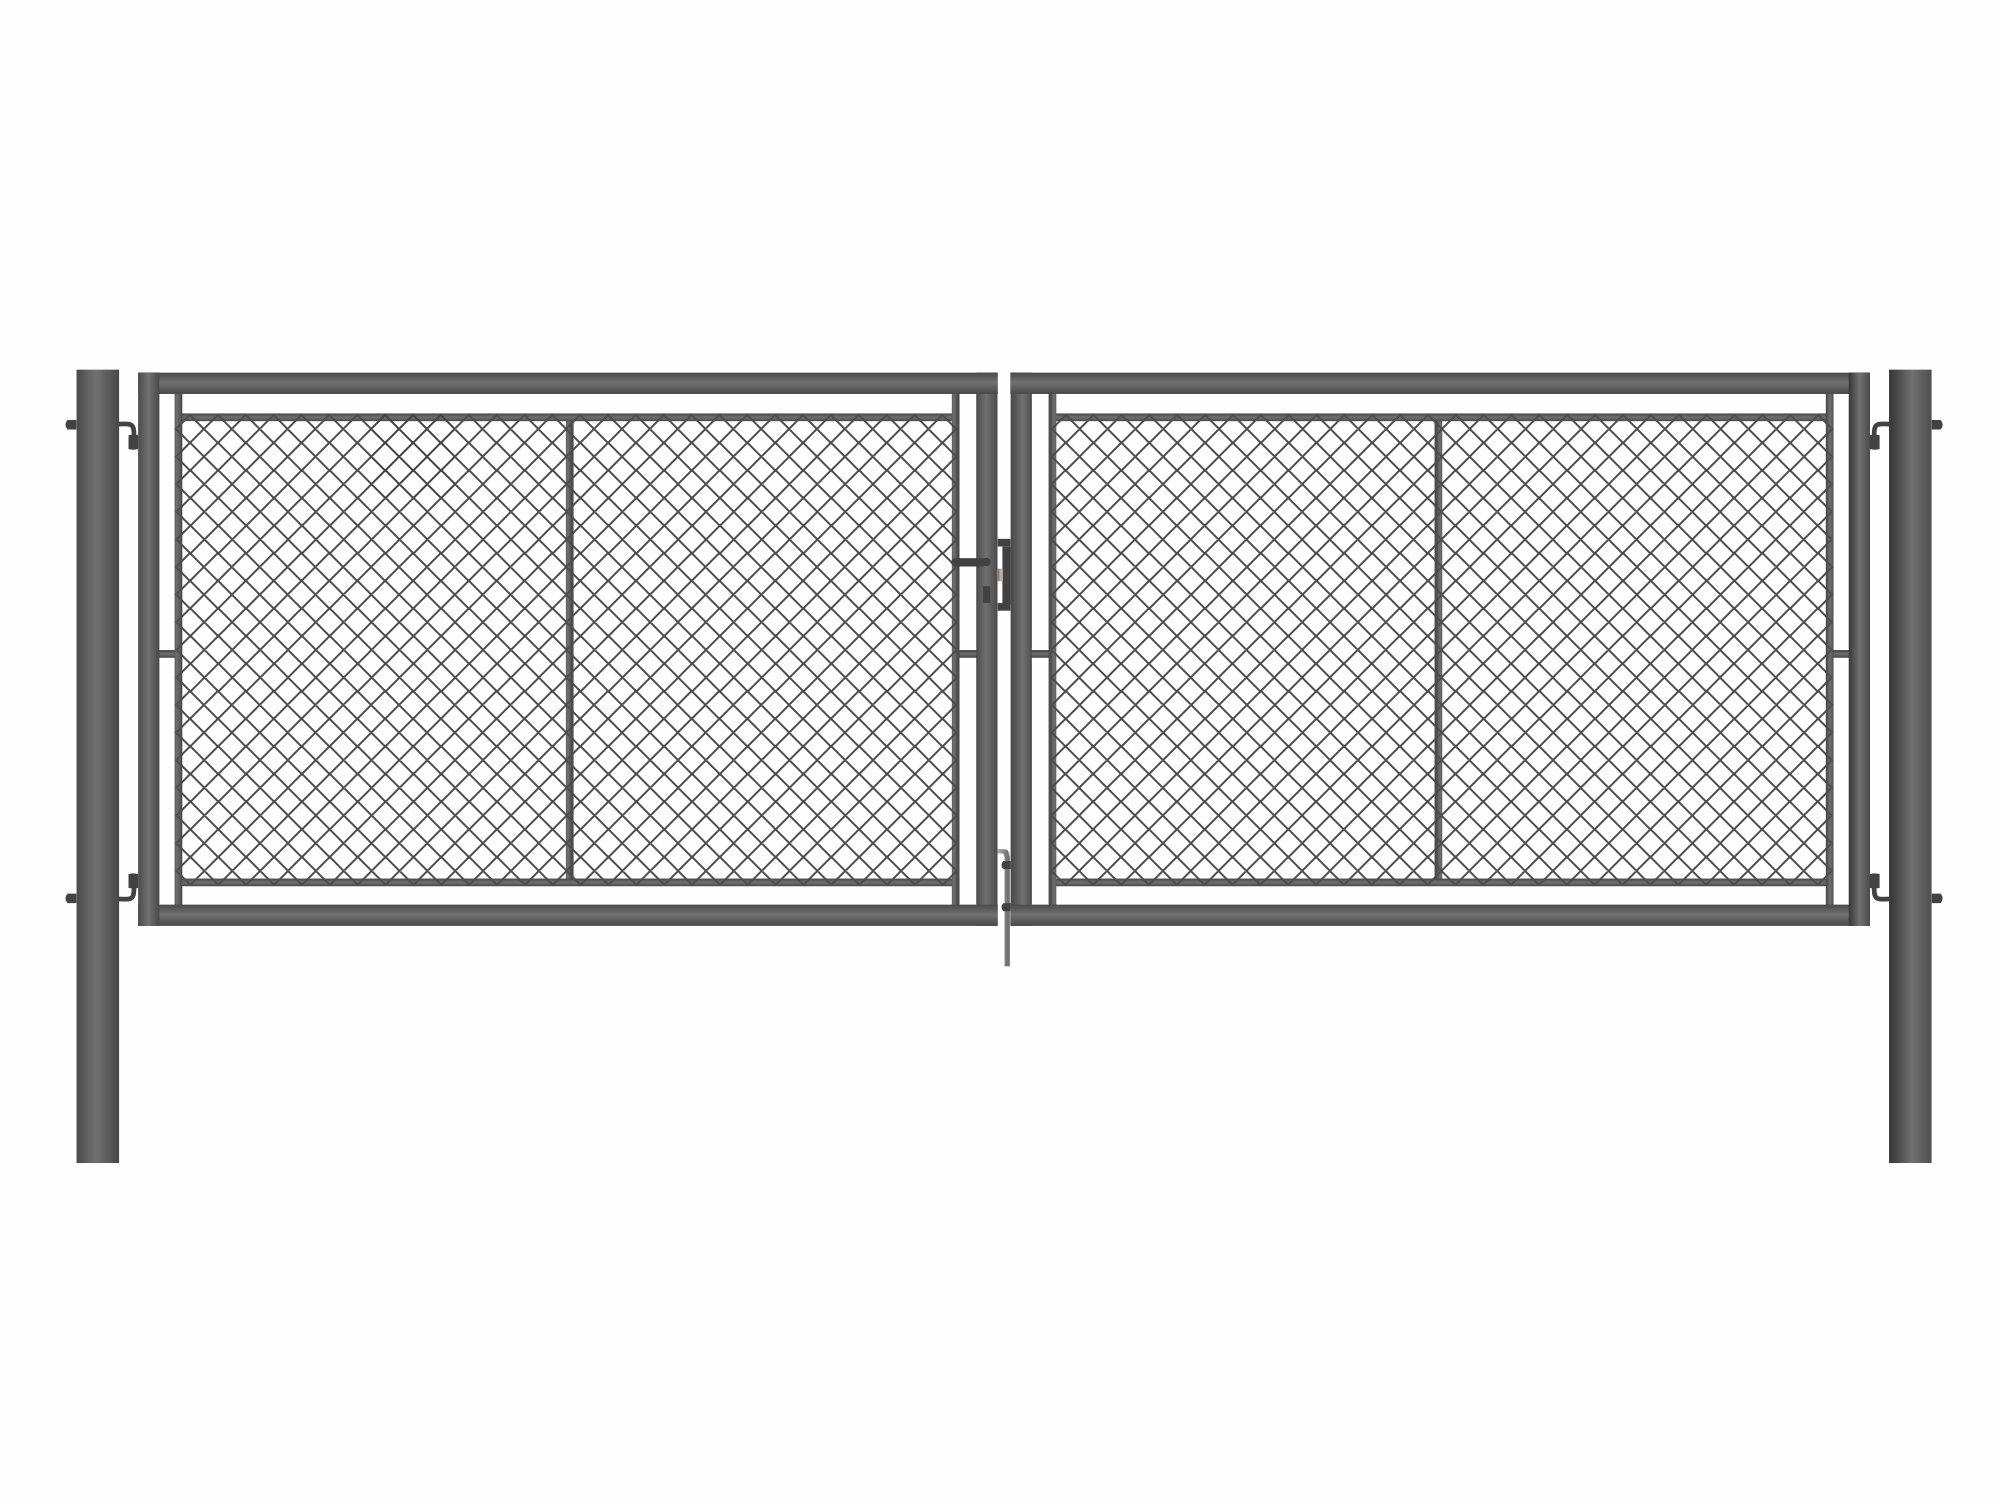 Brána zahradní dvoukřídlá antracit, výška 120 x 400 cm, FAB, s výplní klasického pletiva